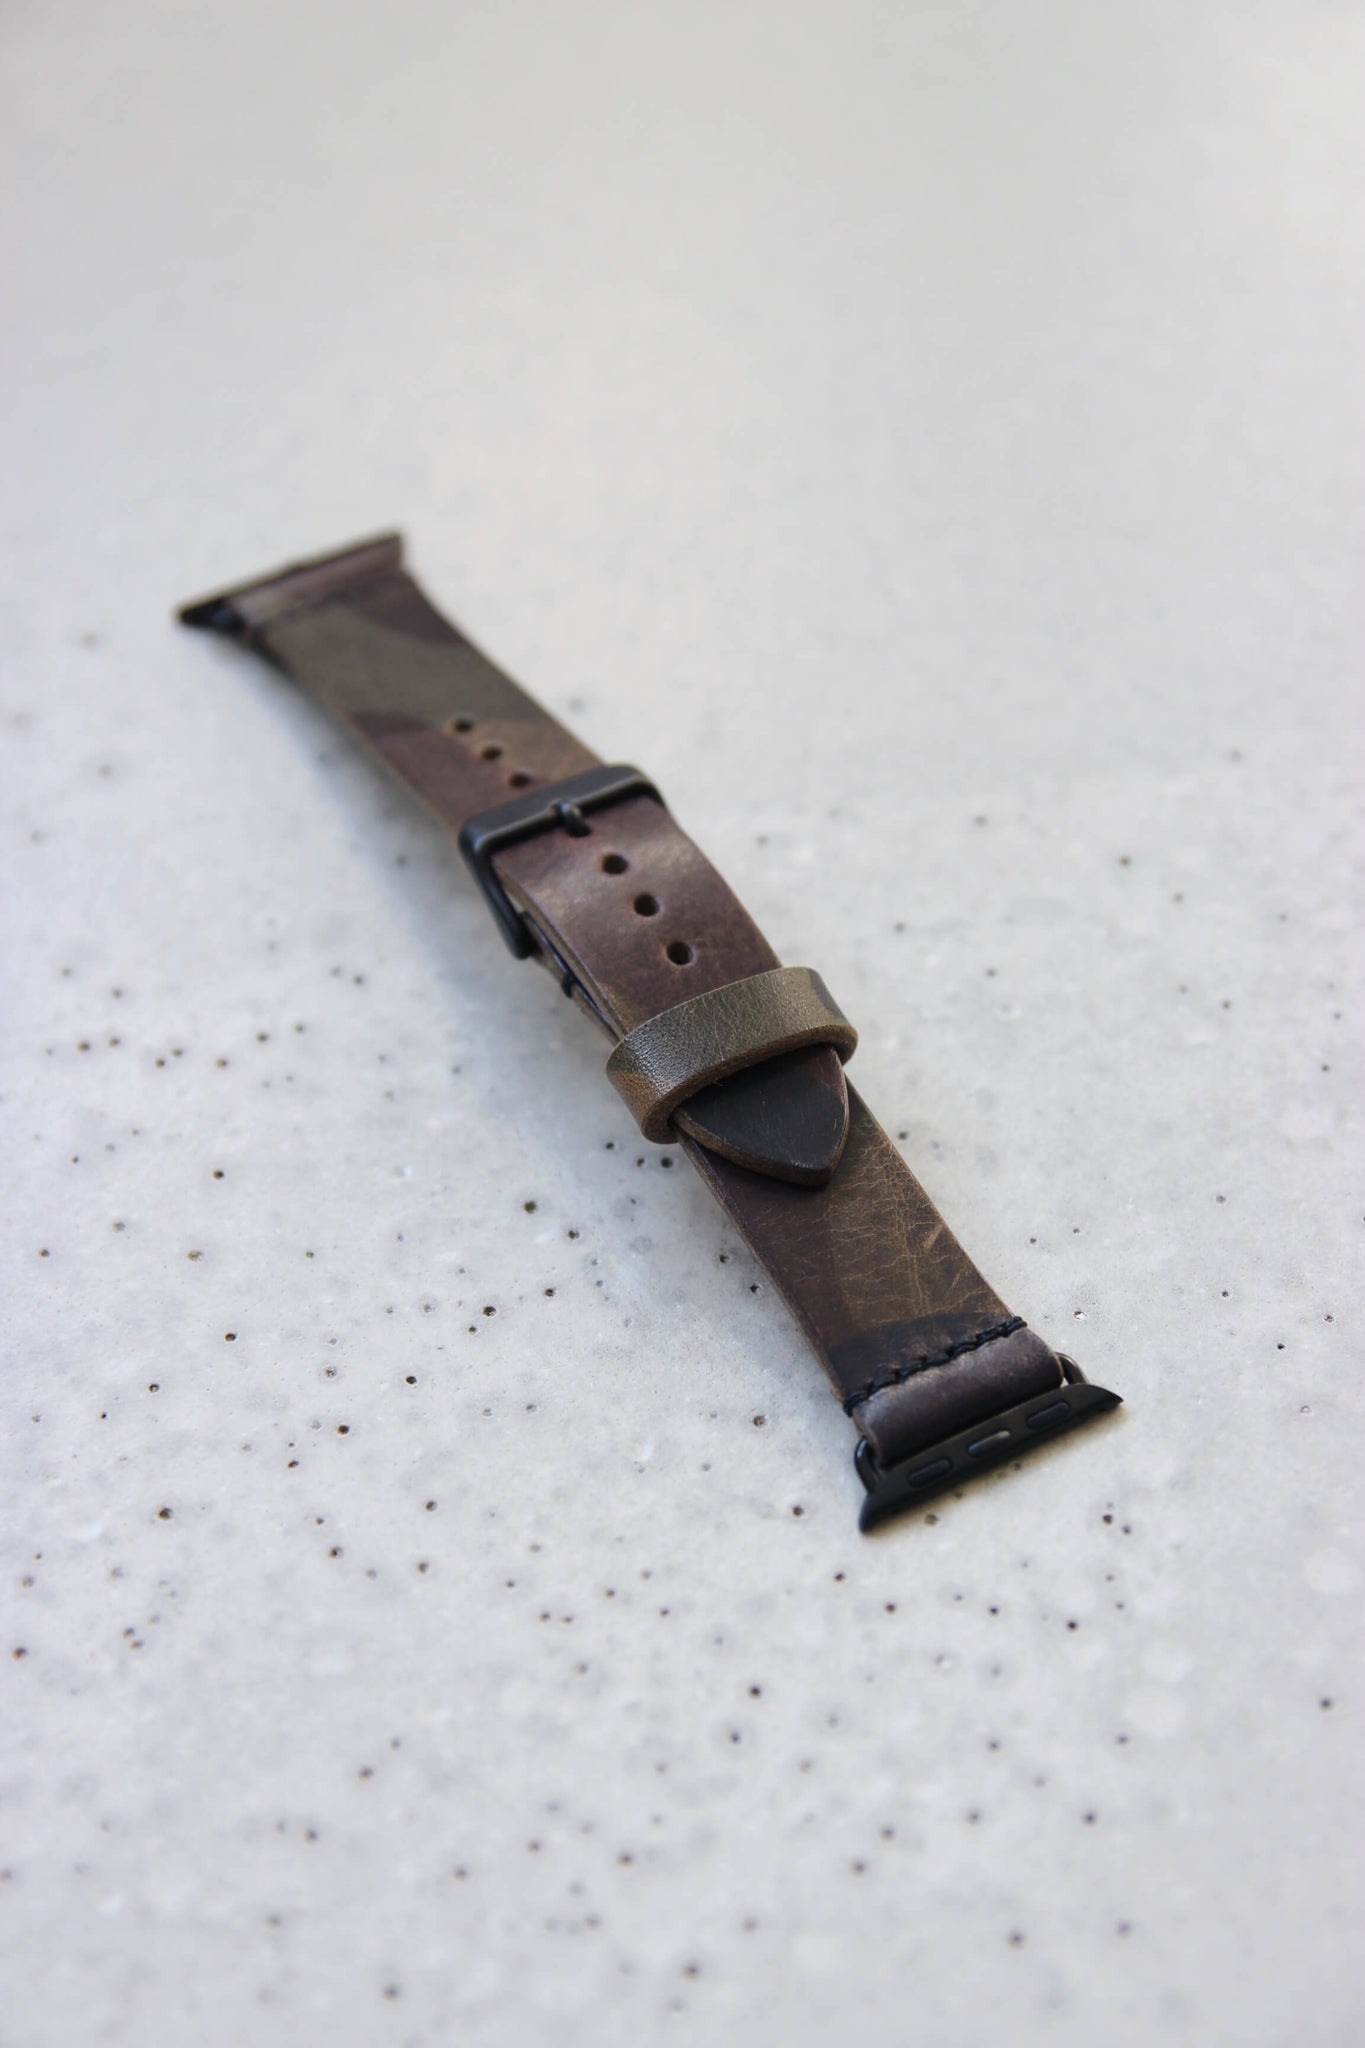 Apple Watch Lederband in Camouflage auf einem Betonboden liegend.